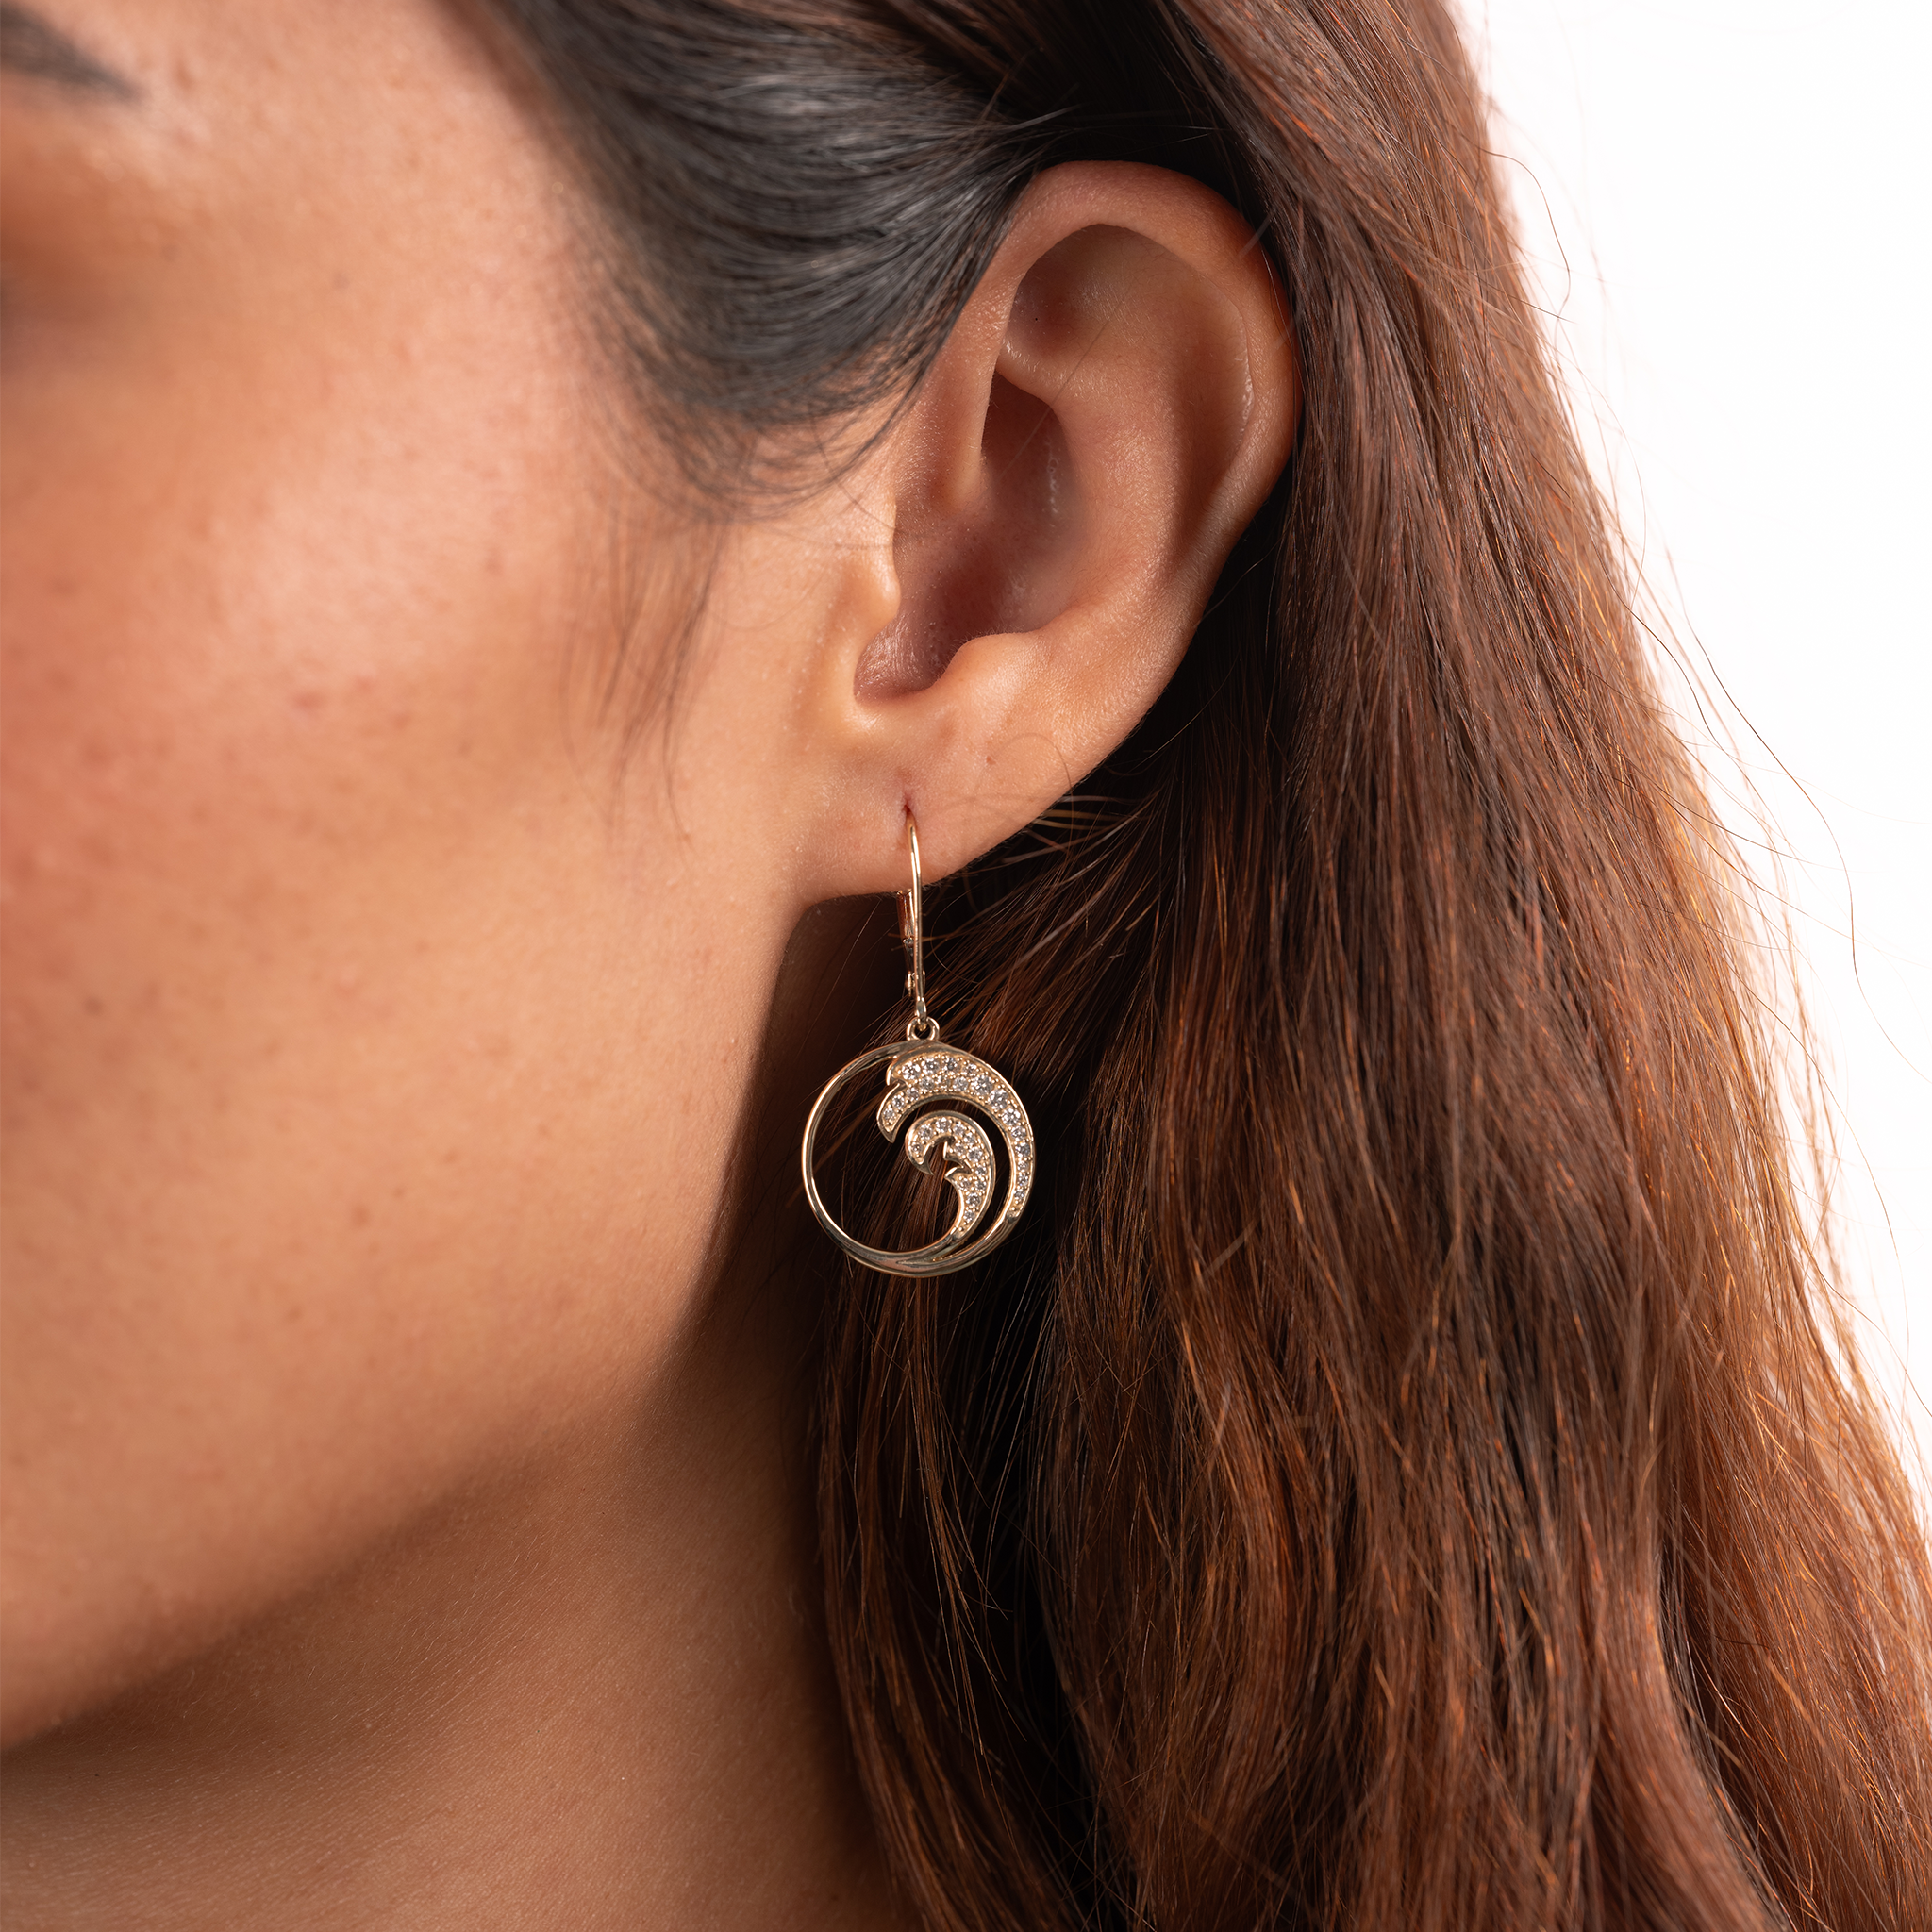 Nalu Earrings in Gold with Diamonds - 18mm